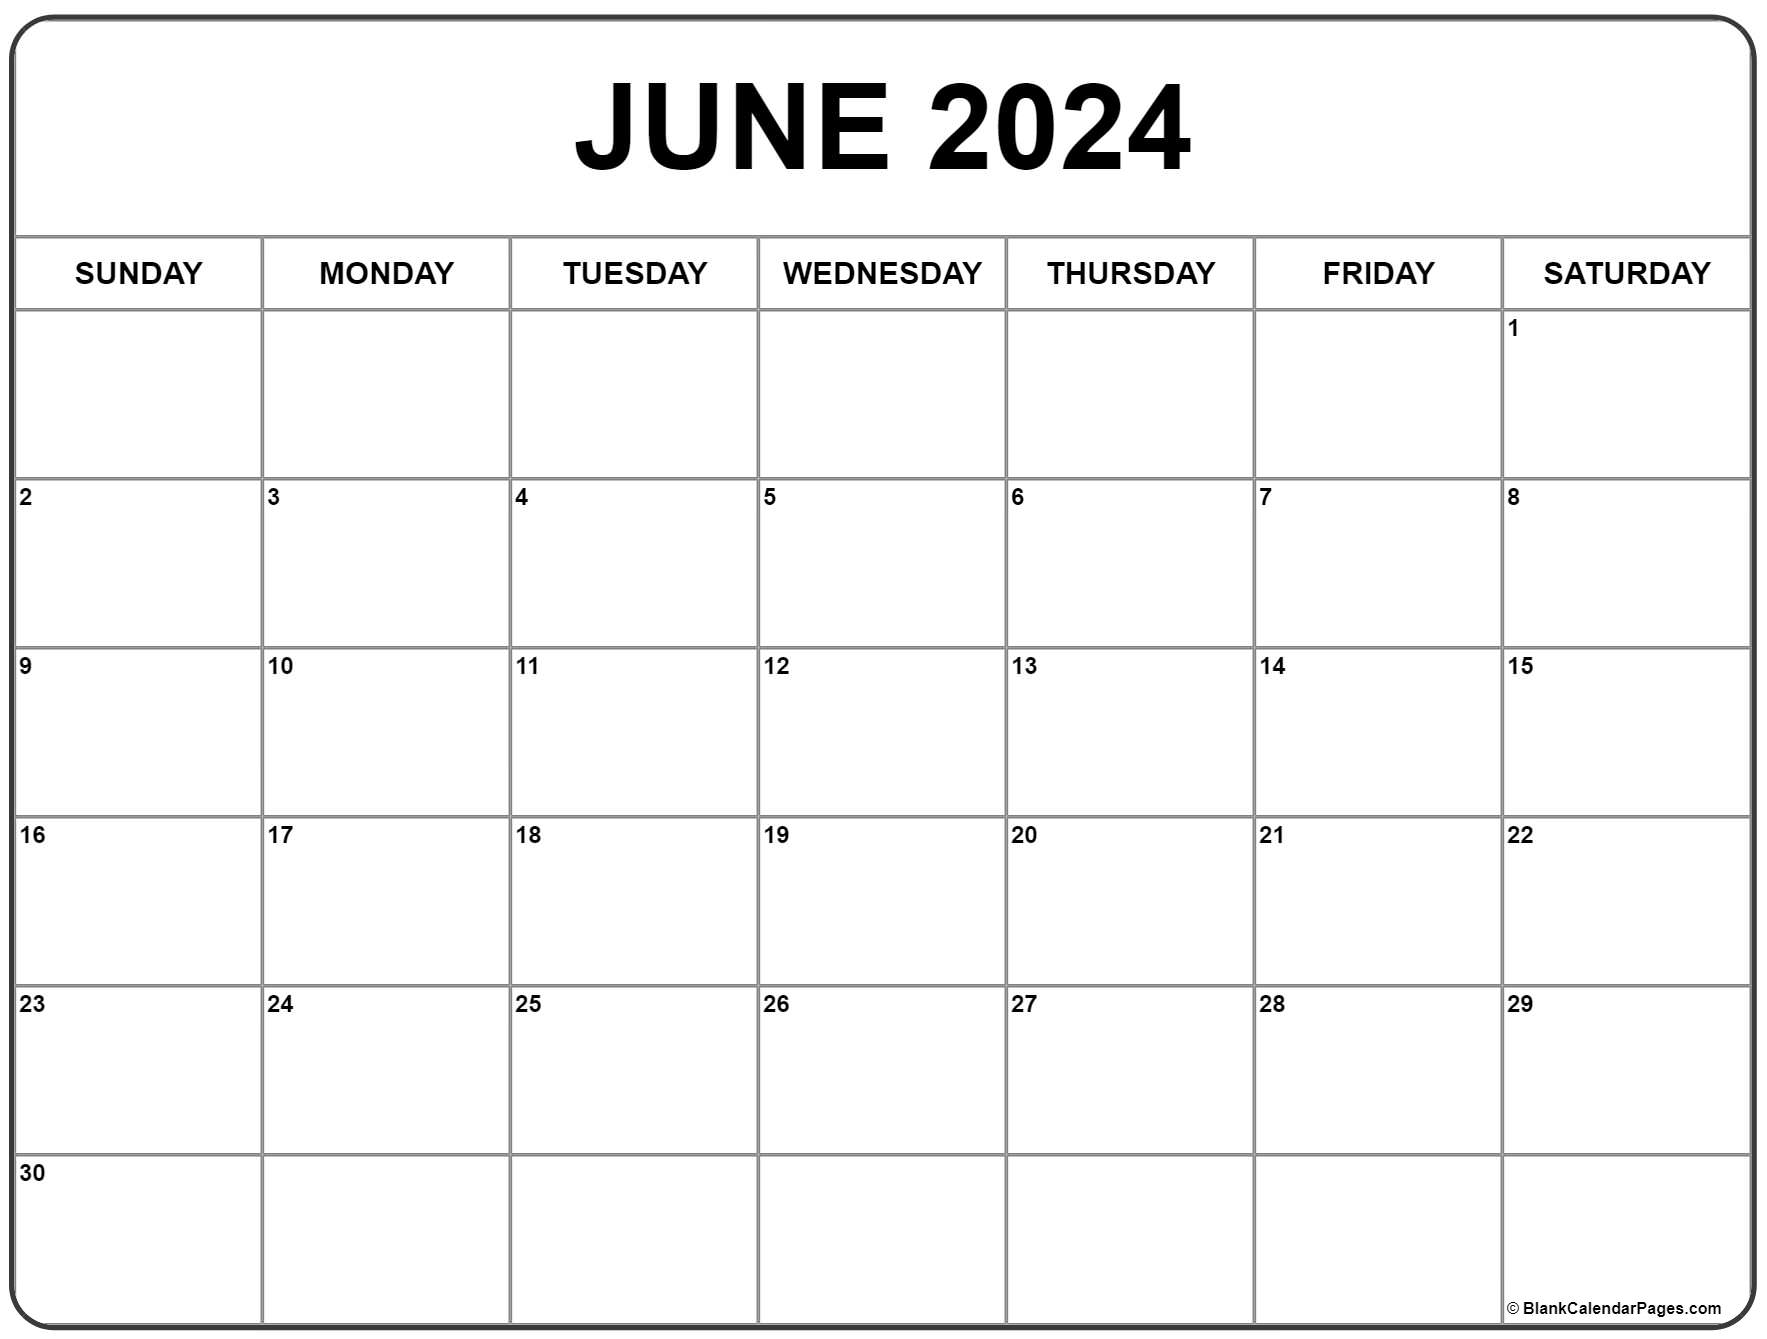 June 2024 Calendar | Free Printable Calendar for A-Printable-Calendar June 2024